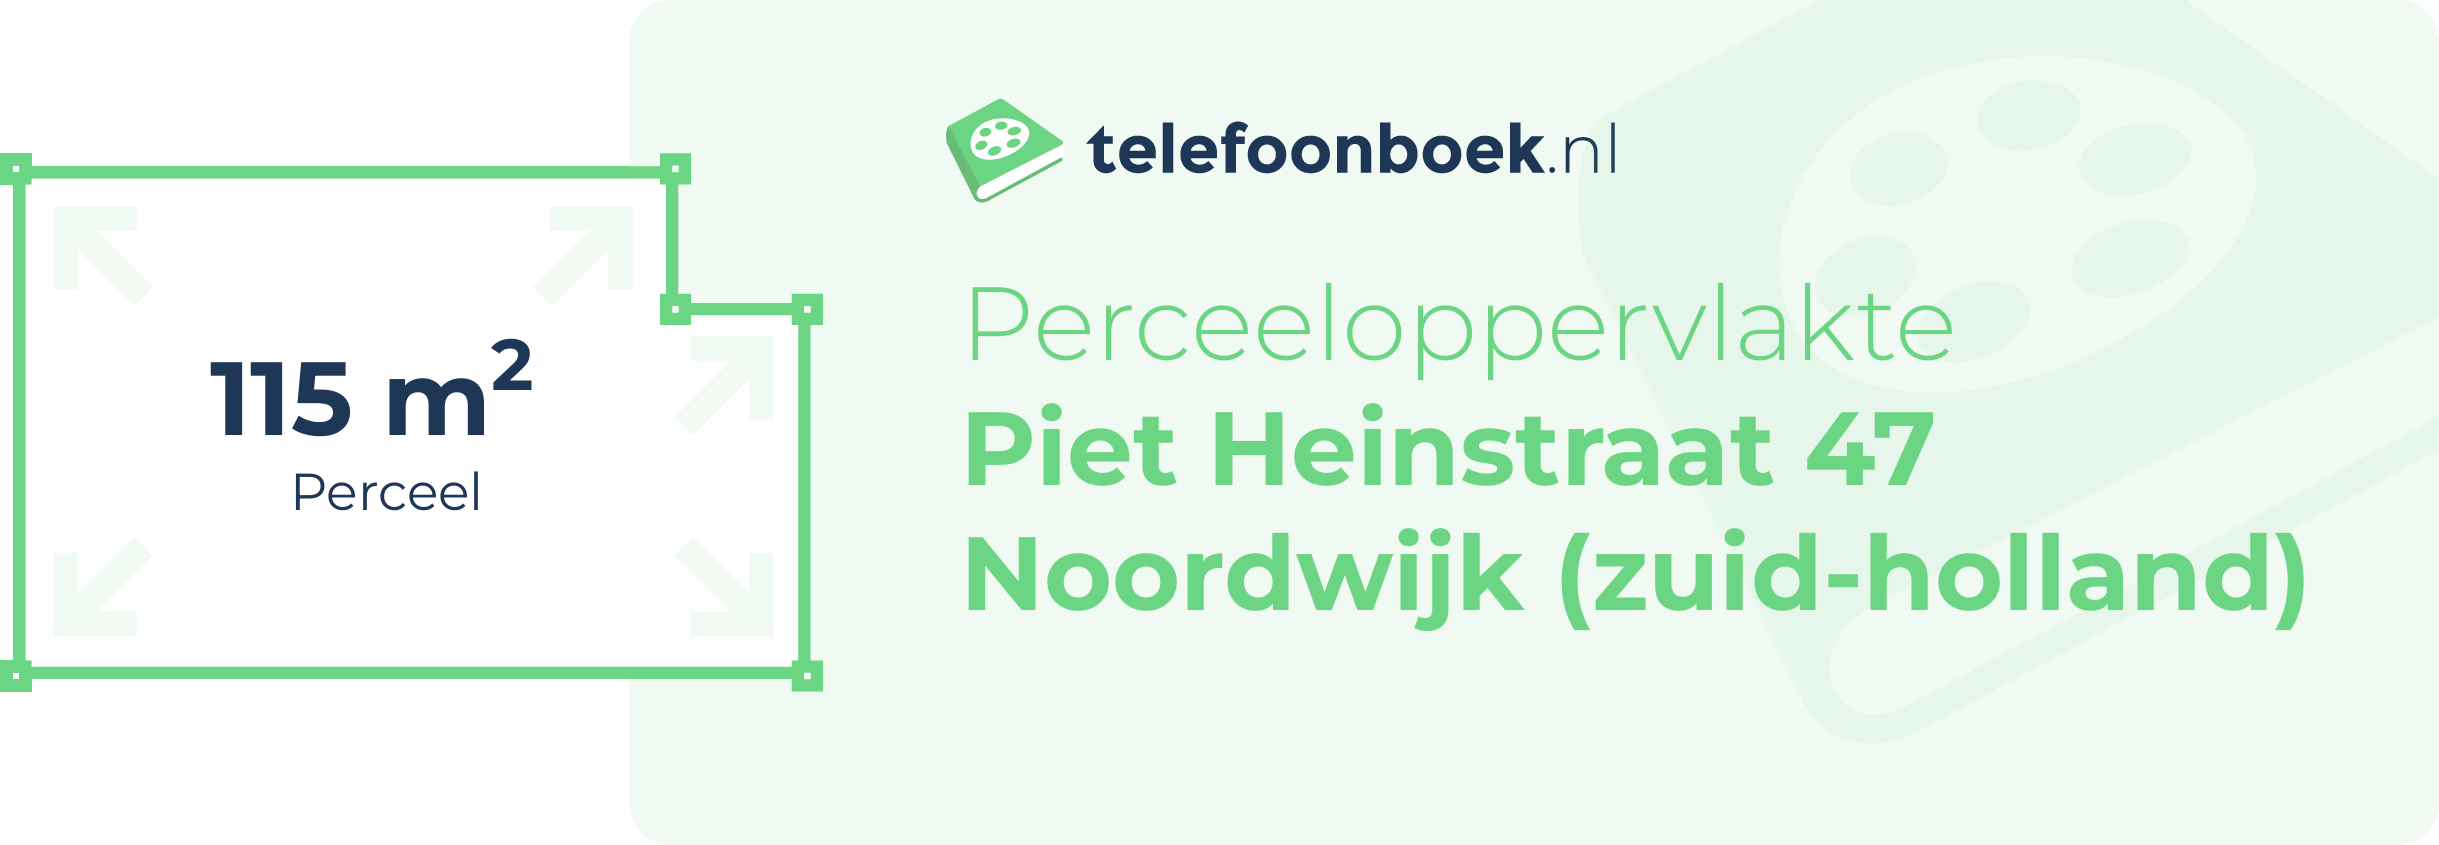 Perceeloppervlakte Piet Heinstraat 47 Noordwijk (Zuid-Holland)